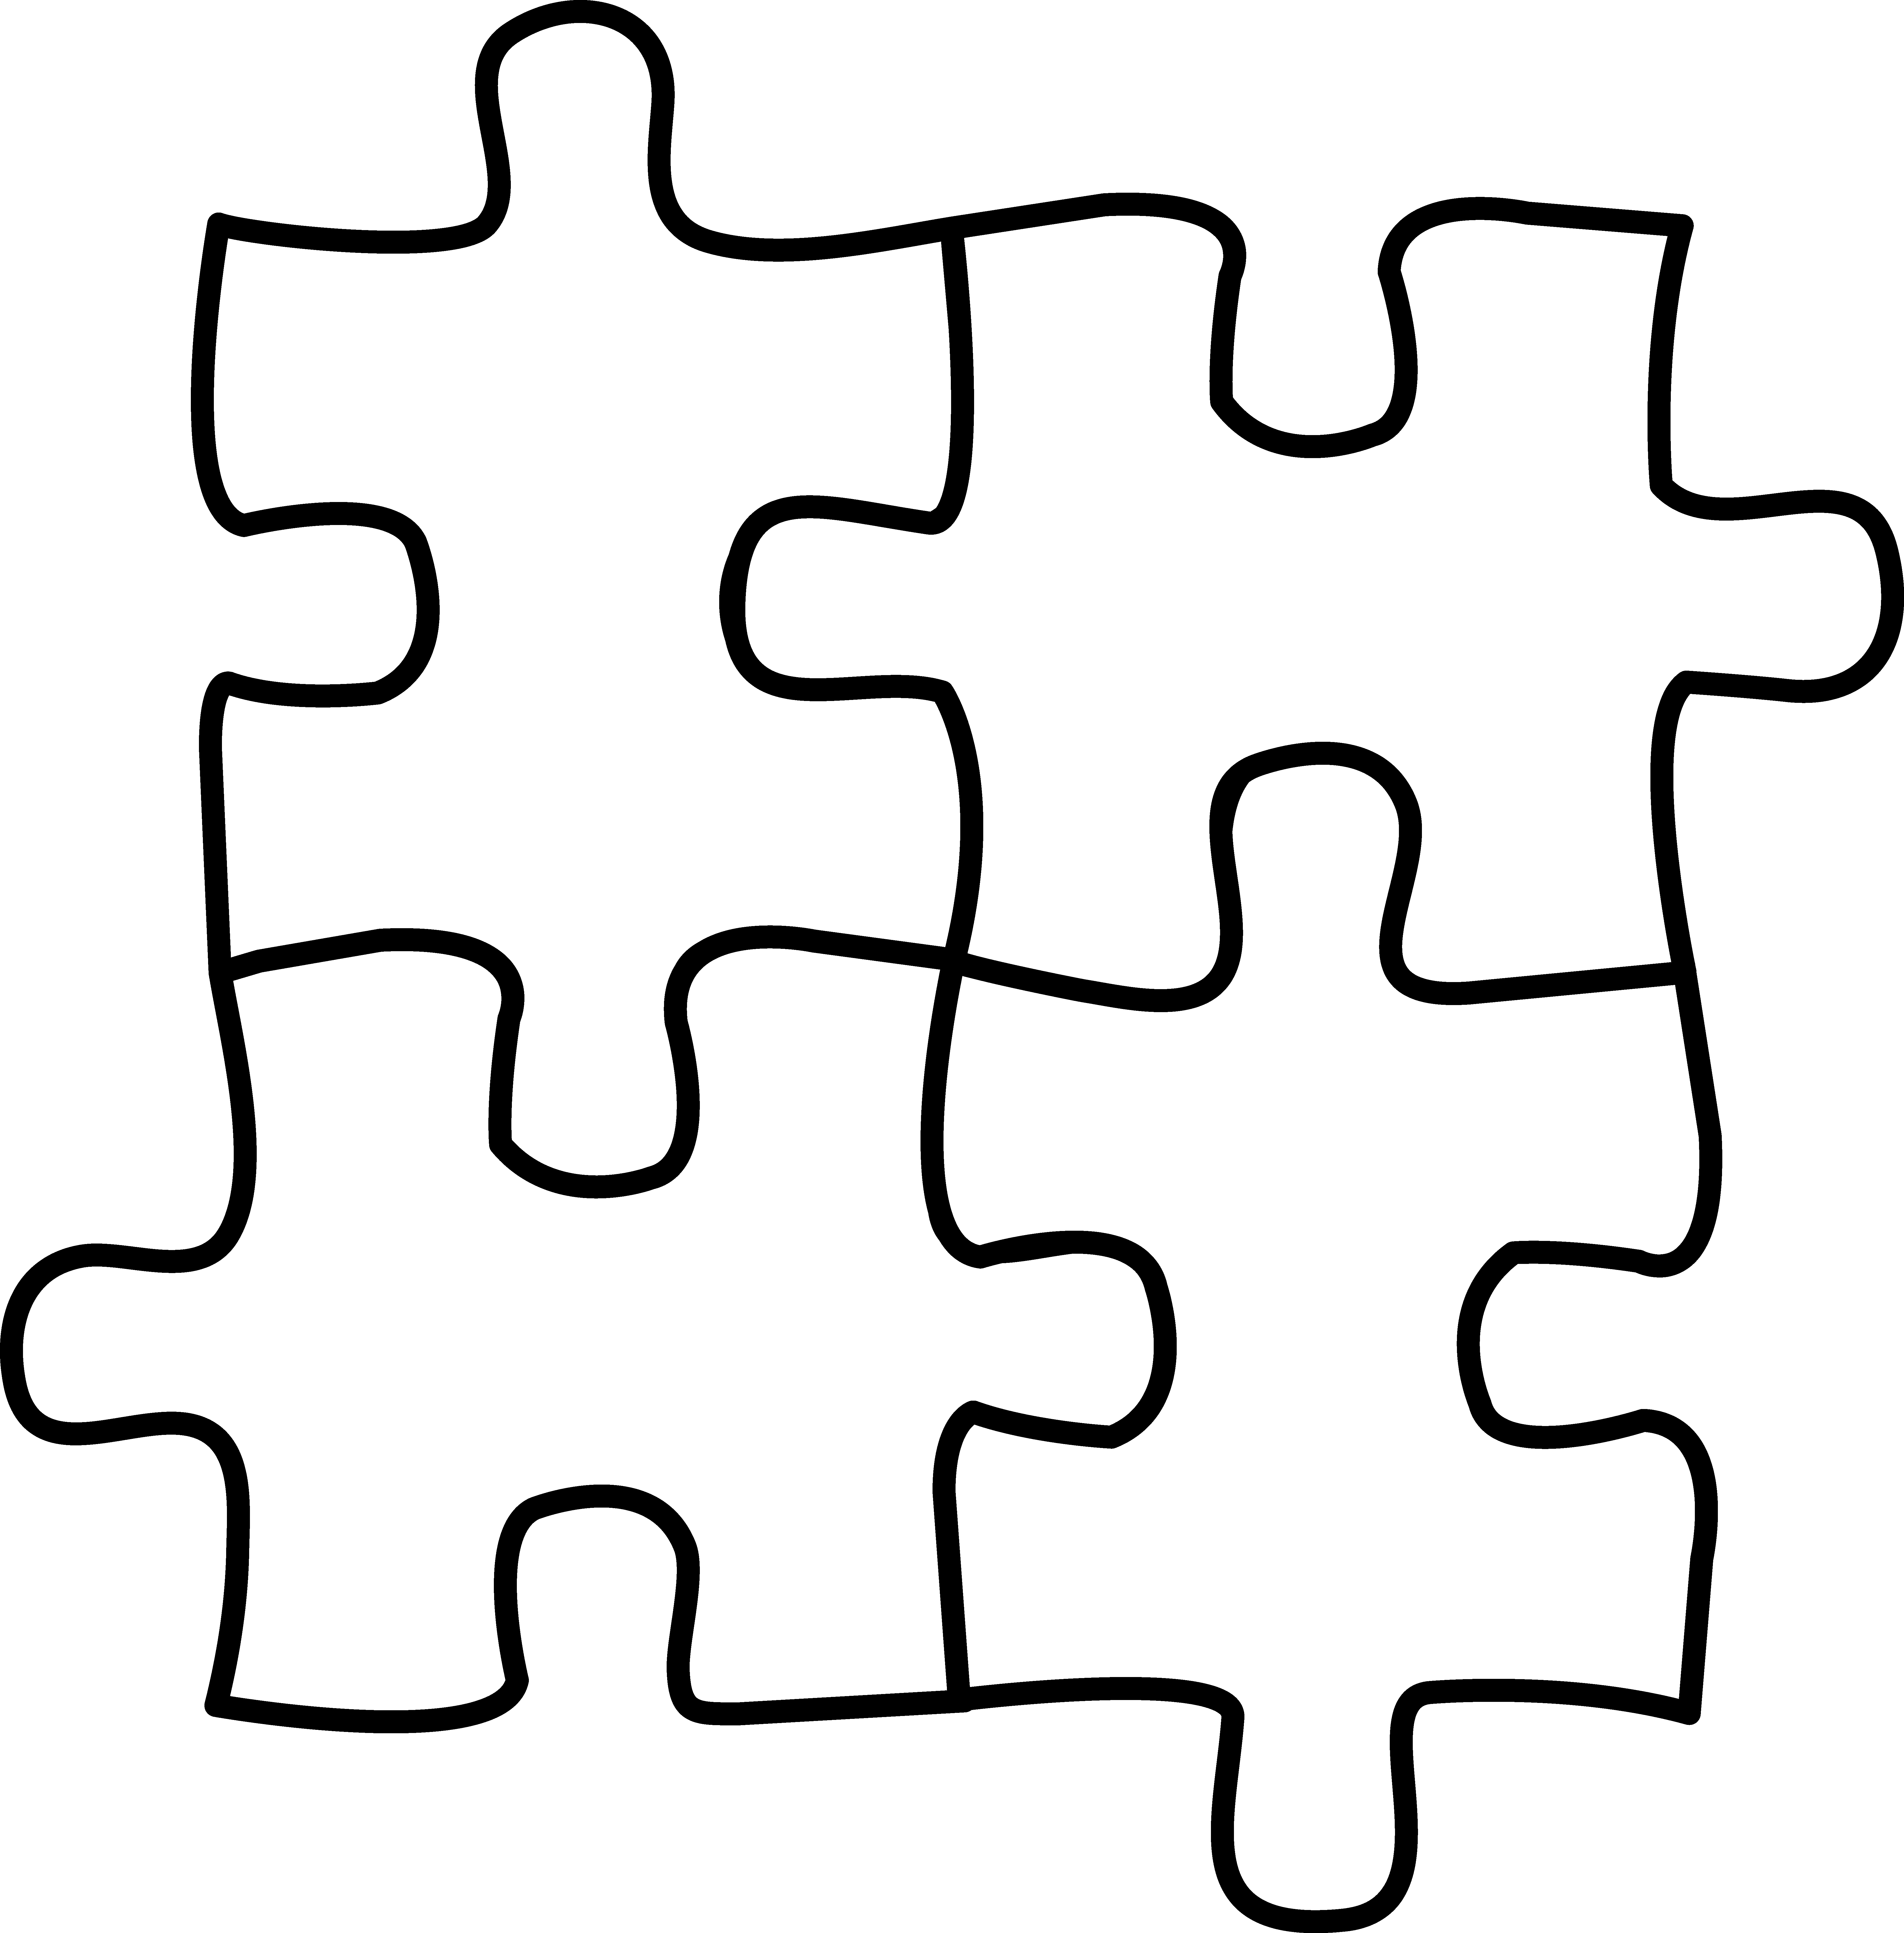 Love puzzle pieces clipart